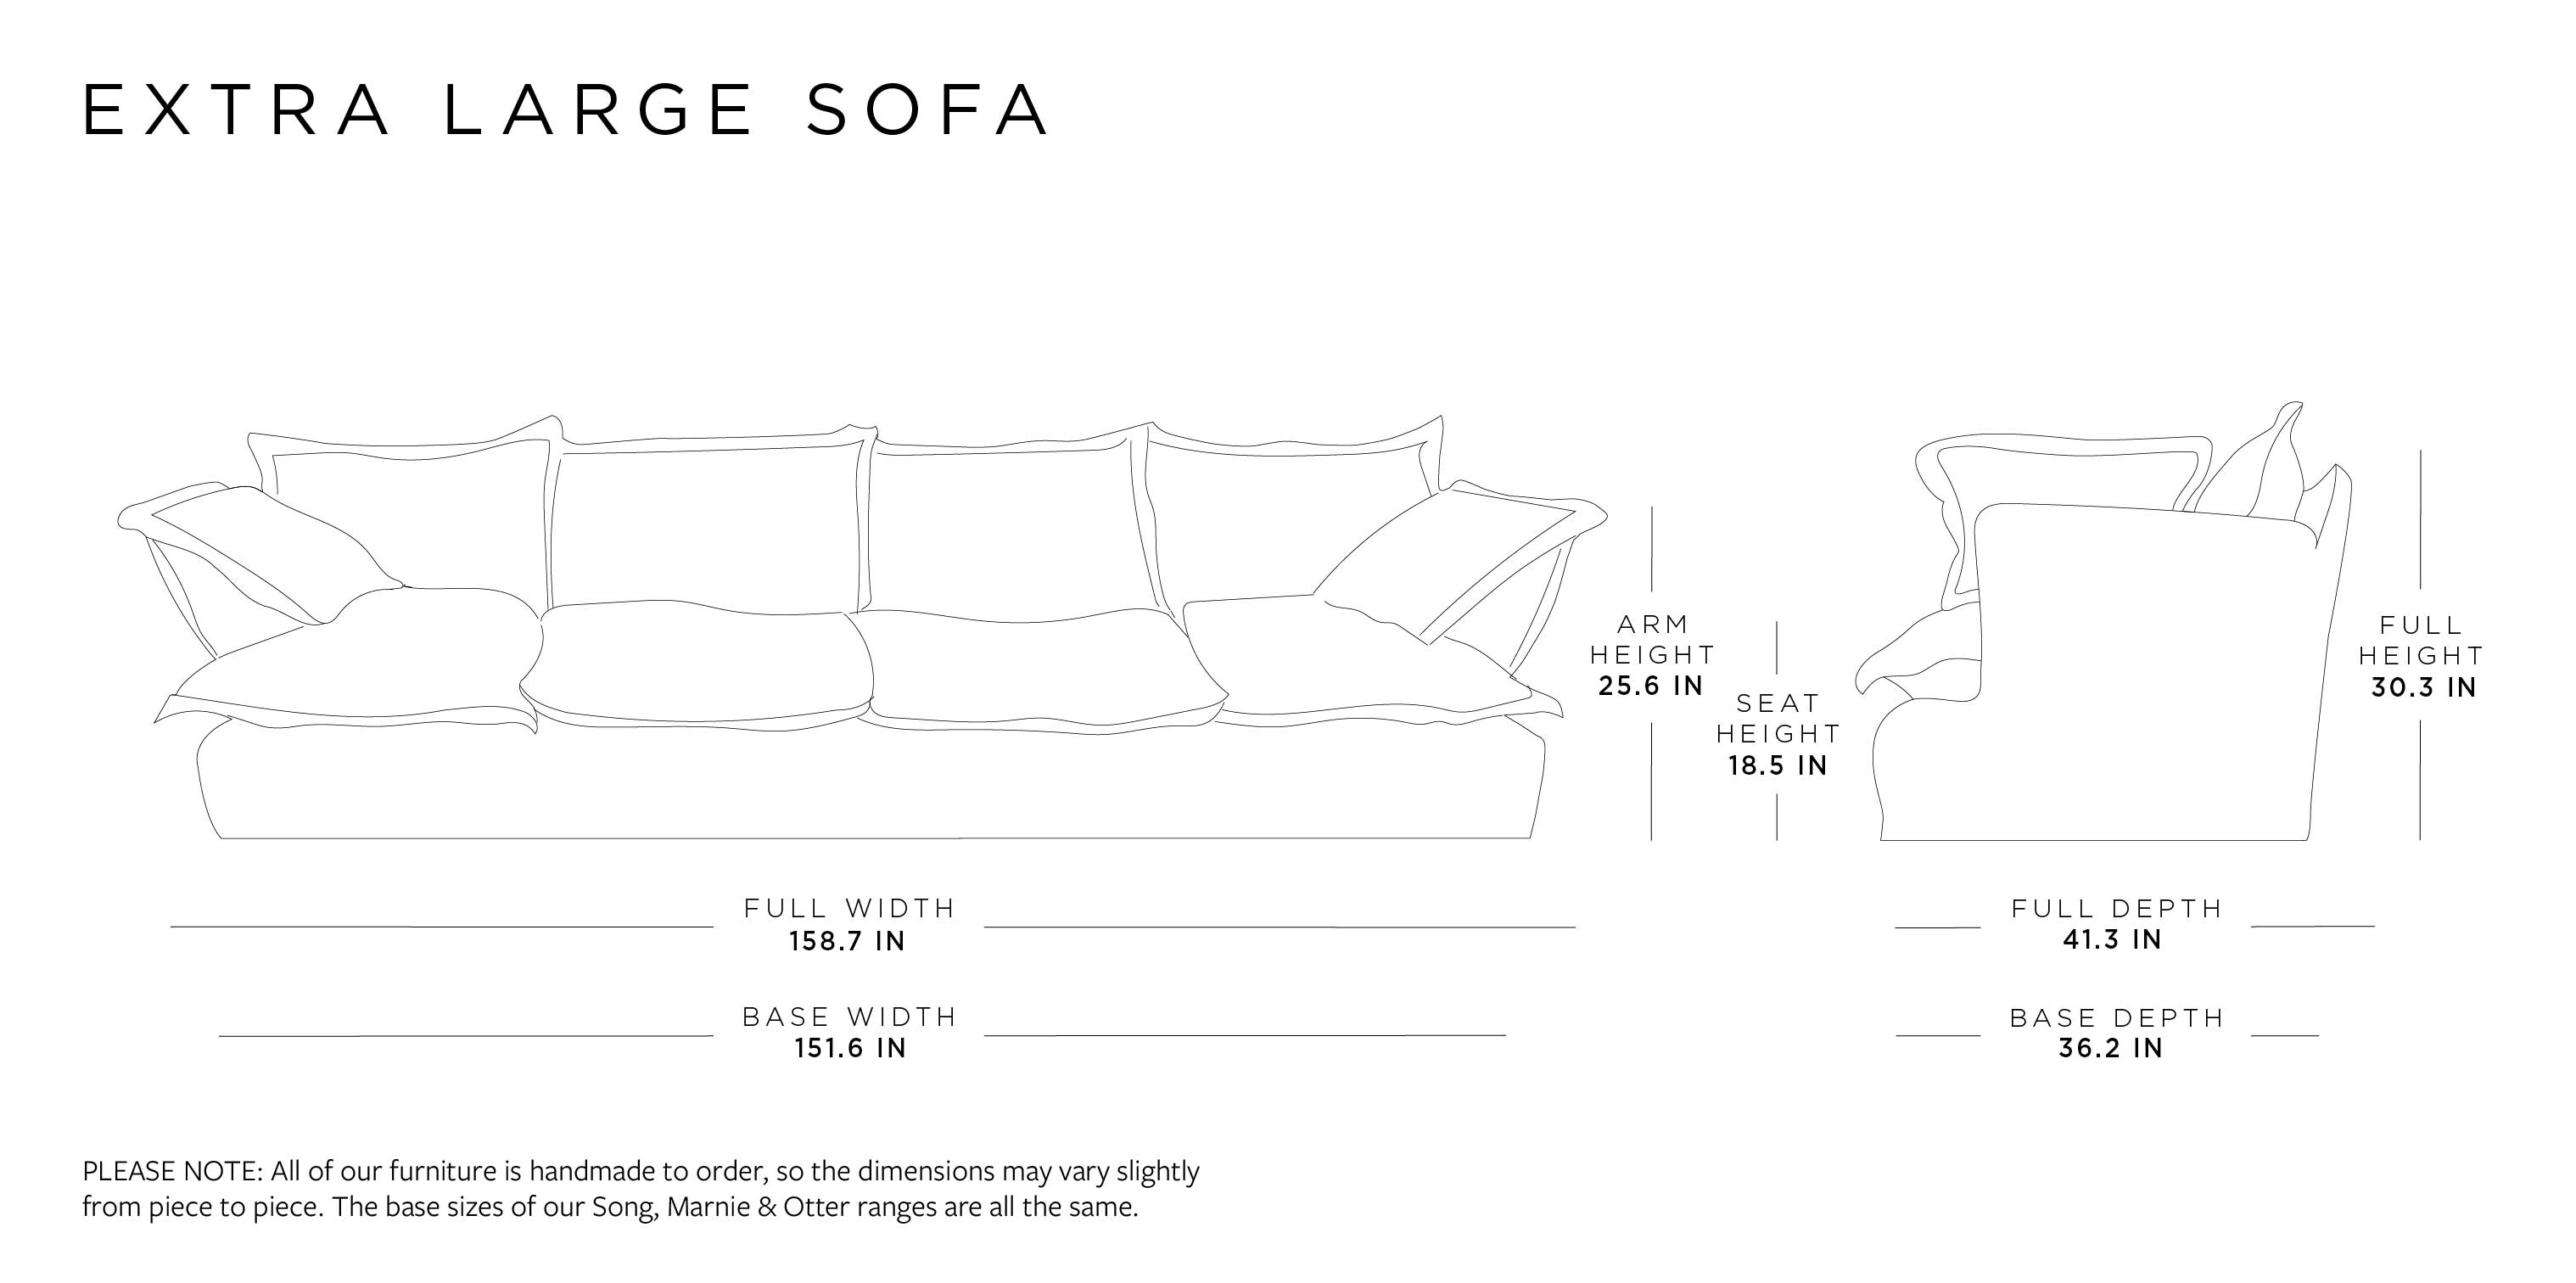 Extra Large Sofa | Otter Range Size Guide